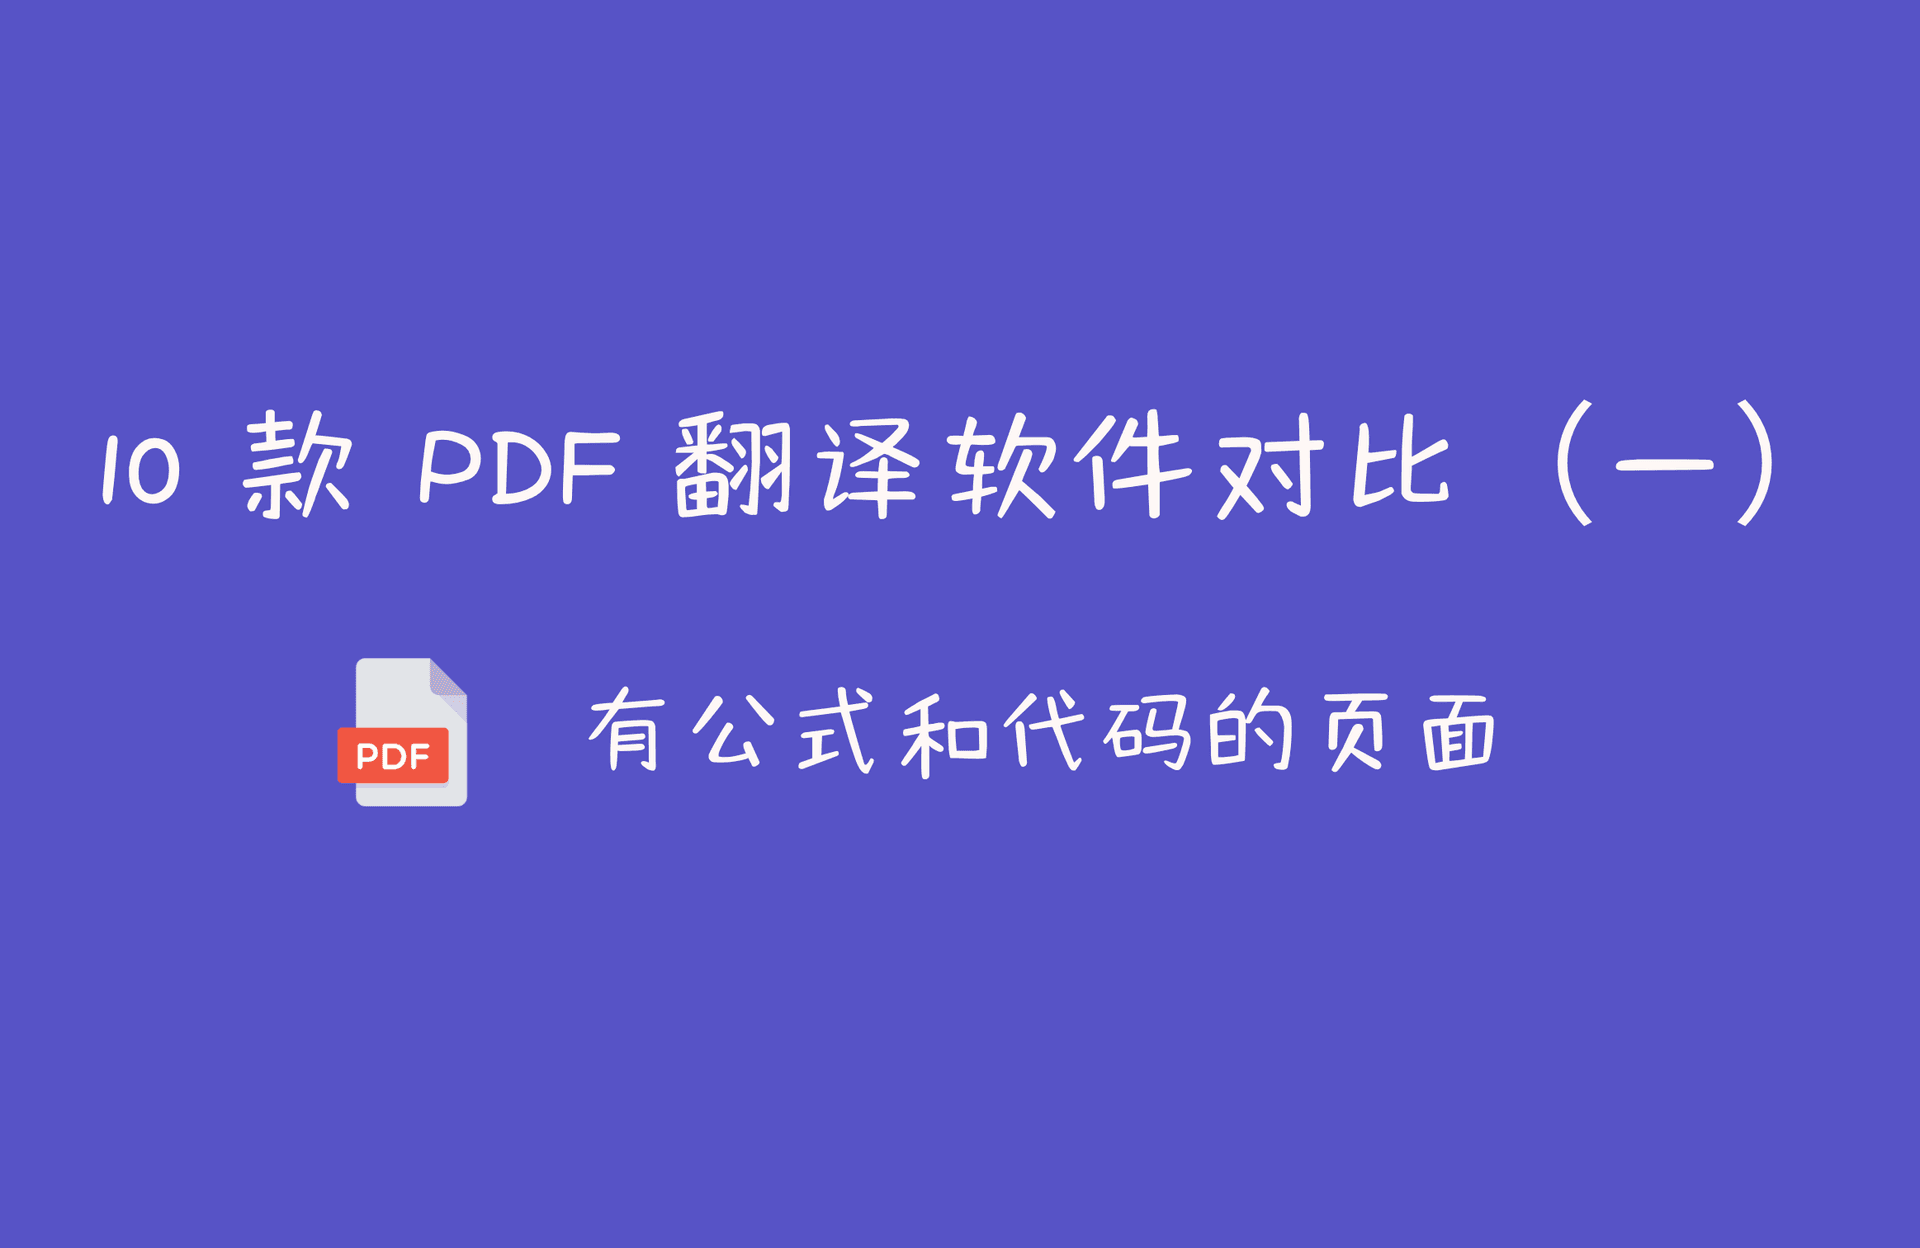 题图 |10 款 PDF 翻译软件对比（一）看看哪个翻译论文最好最准确